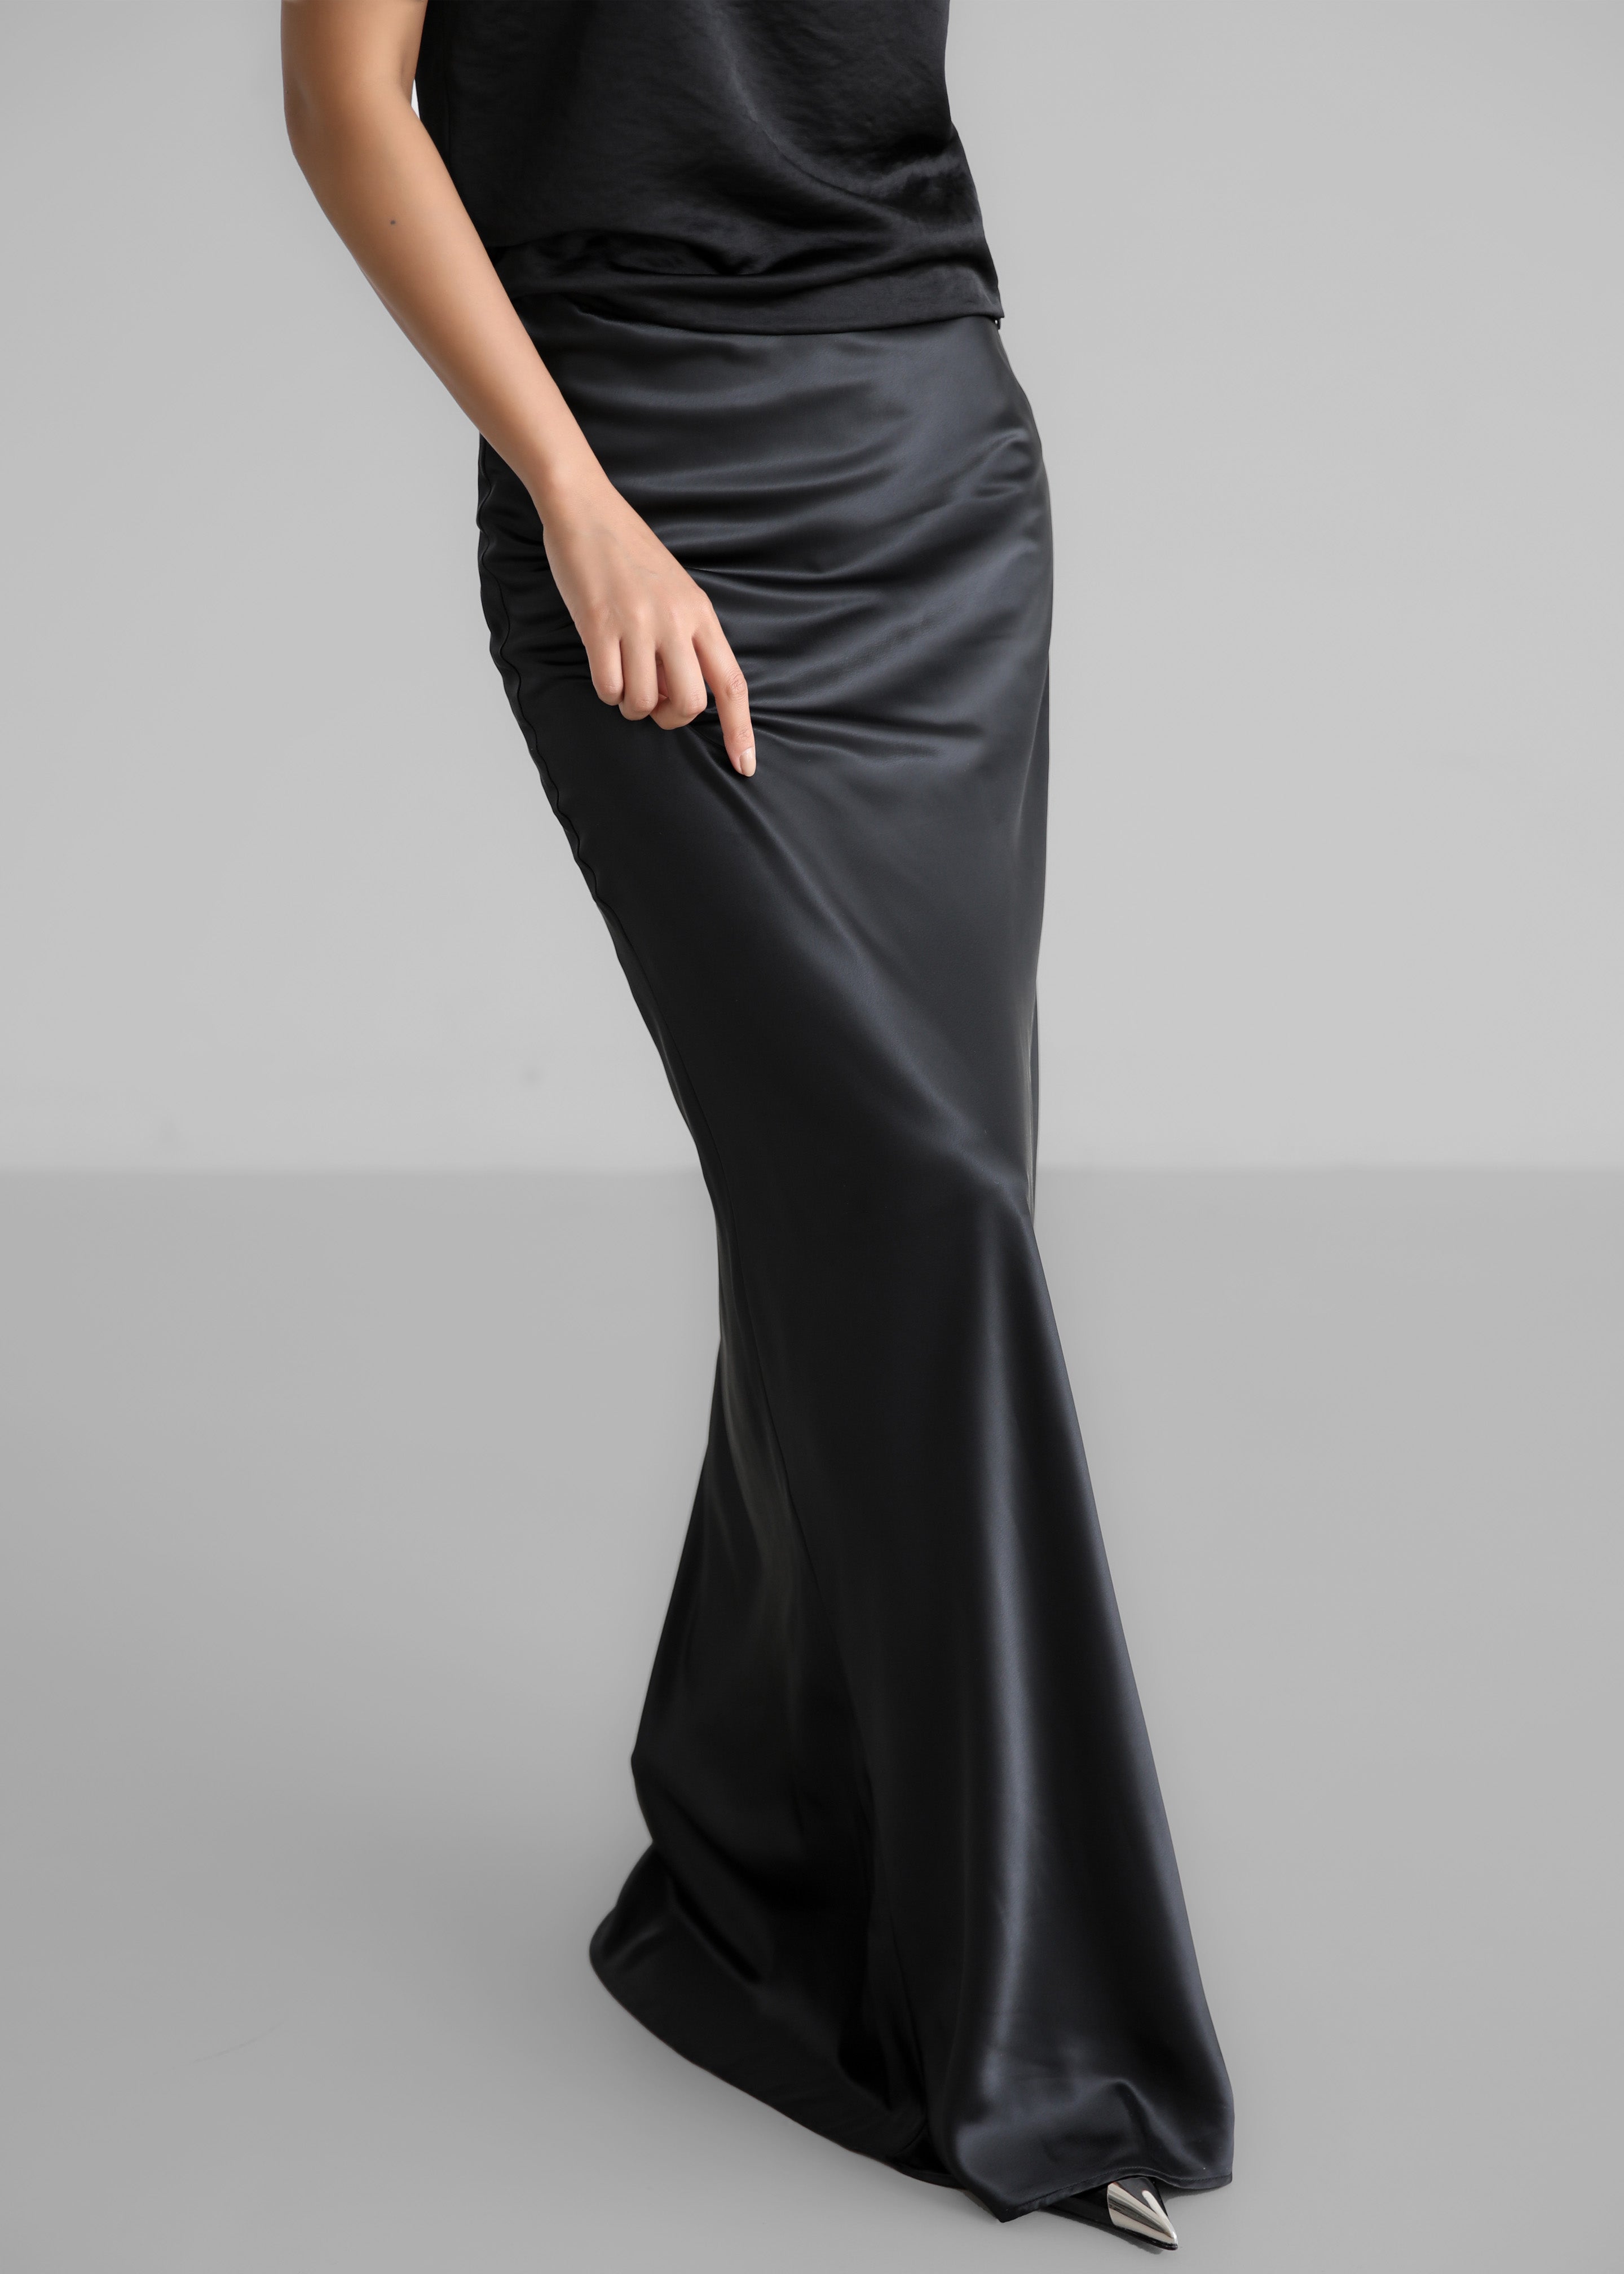 Renesmee Satin Skirt - Black - 7